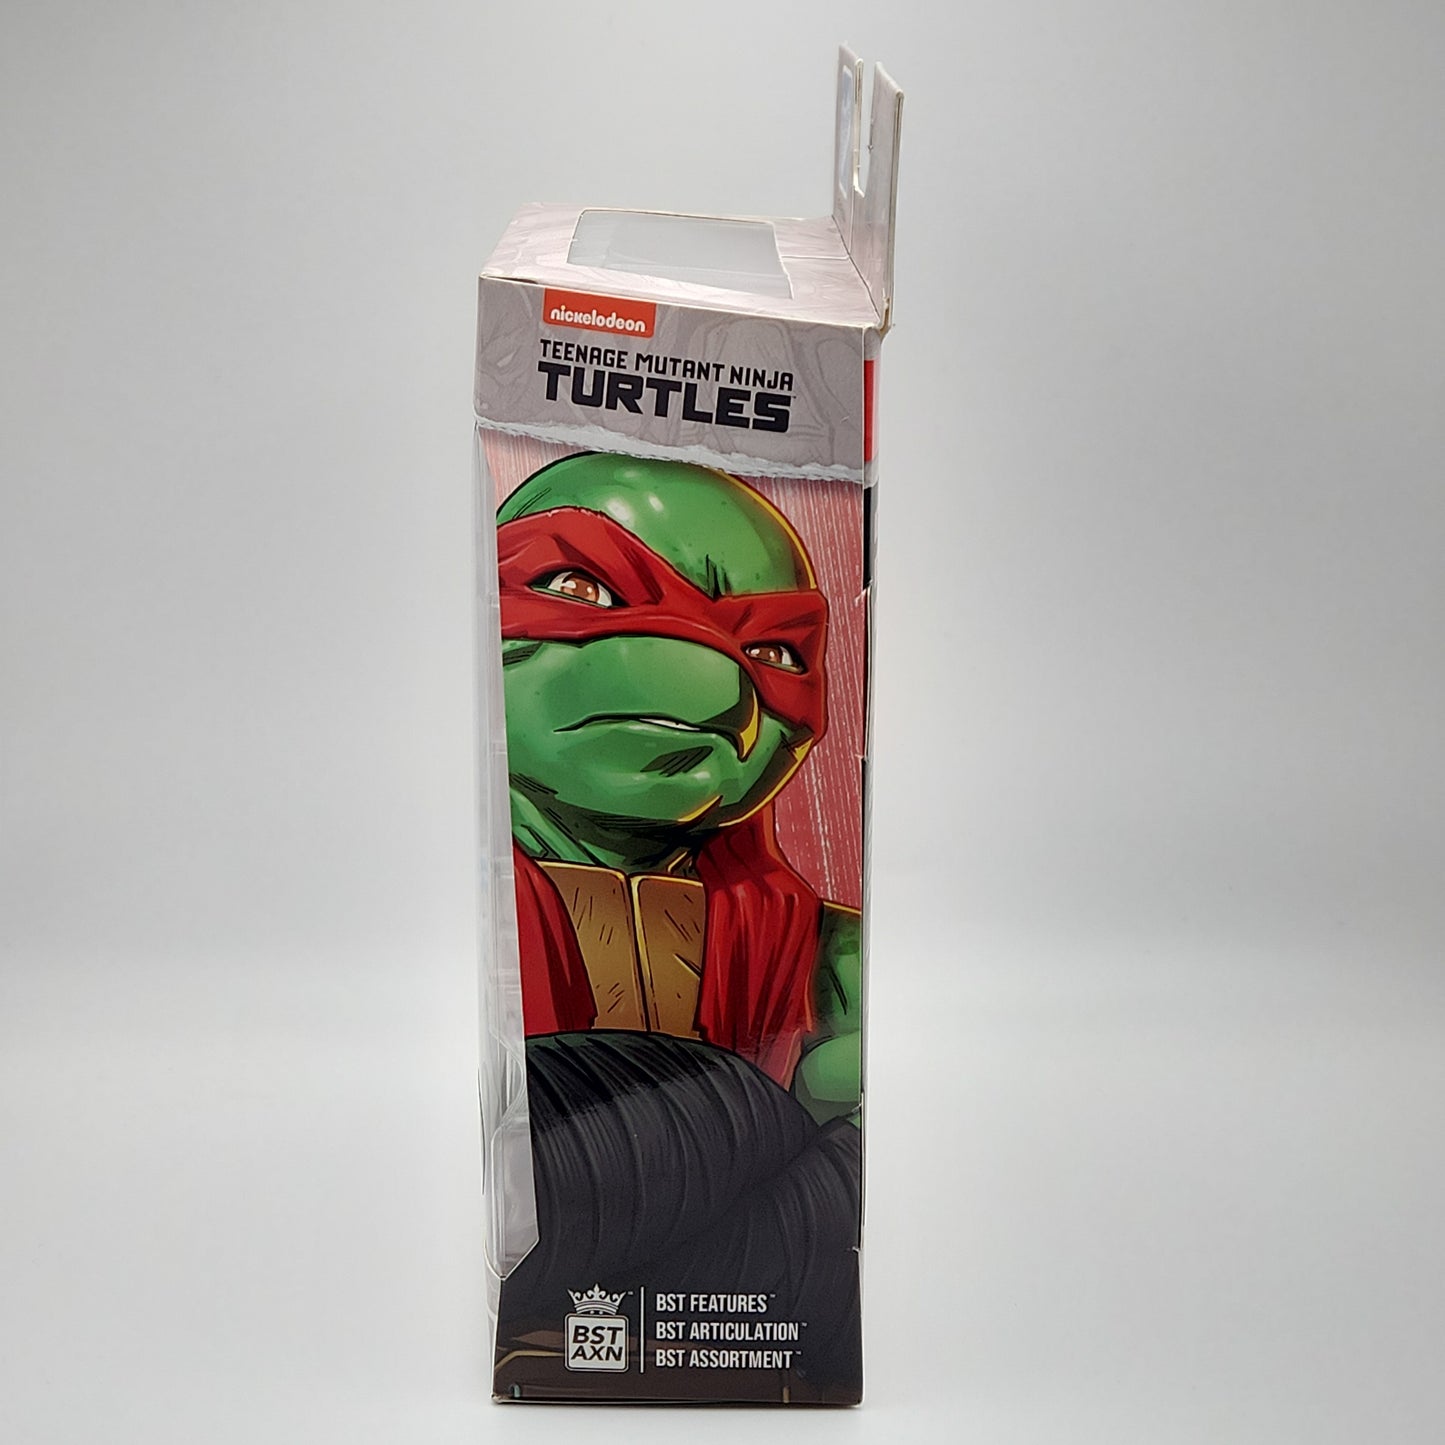 Teenage Mutant Ninja Turtles- Raphael (BST AXN)